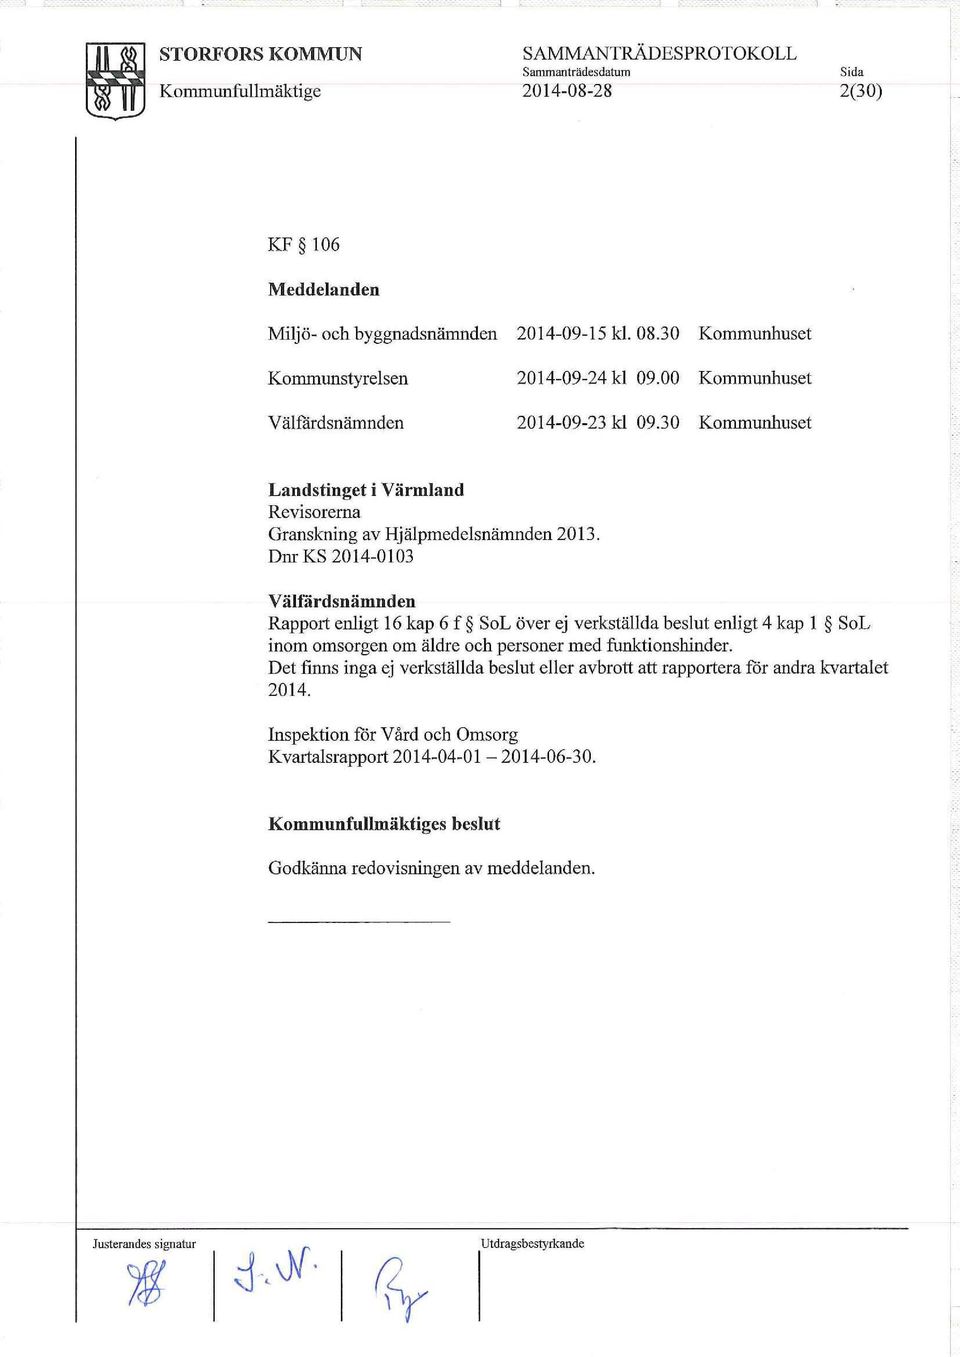 Dm KS 2014-0103 Välfårdsnämnden Rapport enligt 16 kap 6 f SoL över ej verkställda beslut enligt 4 kap l SoL inom omsorgen om äldre och personer med funktionshinder.